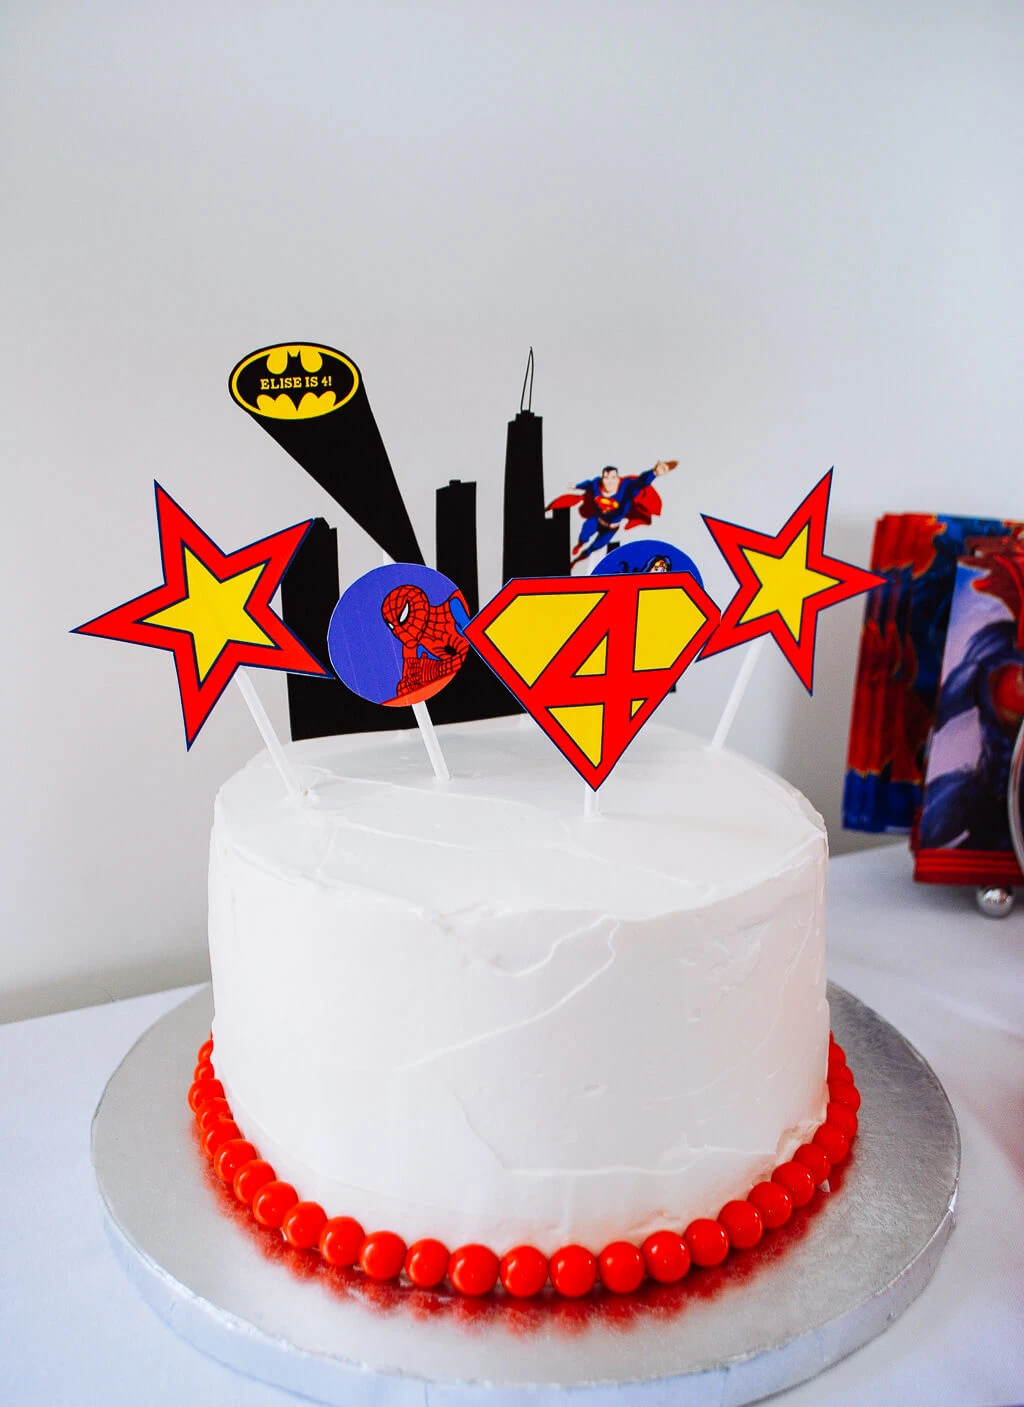 Top model theme cake for fashion girl's birthday - - CakesDecor